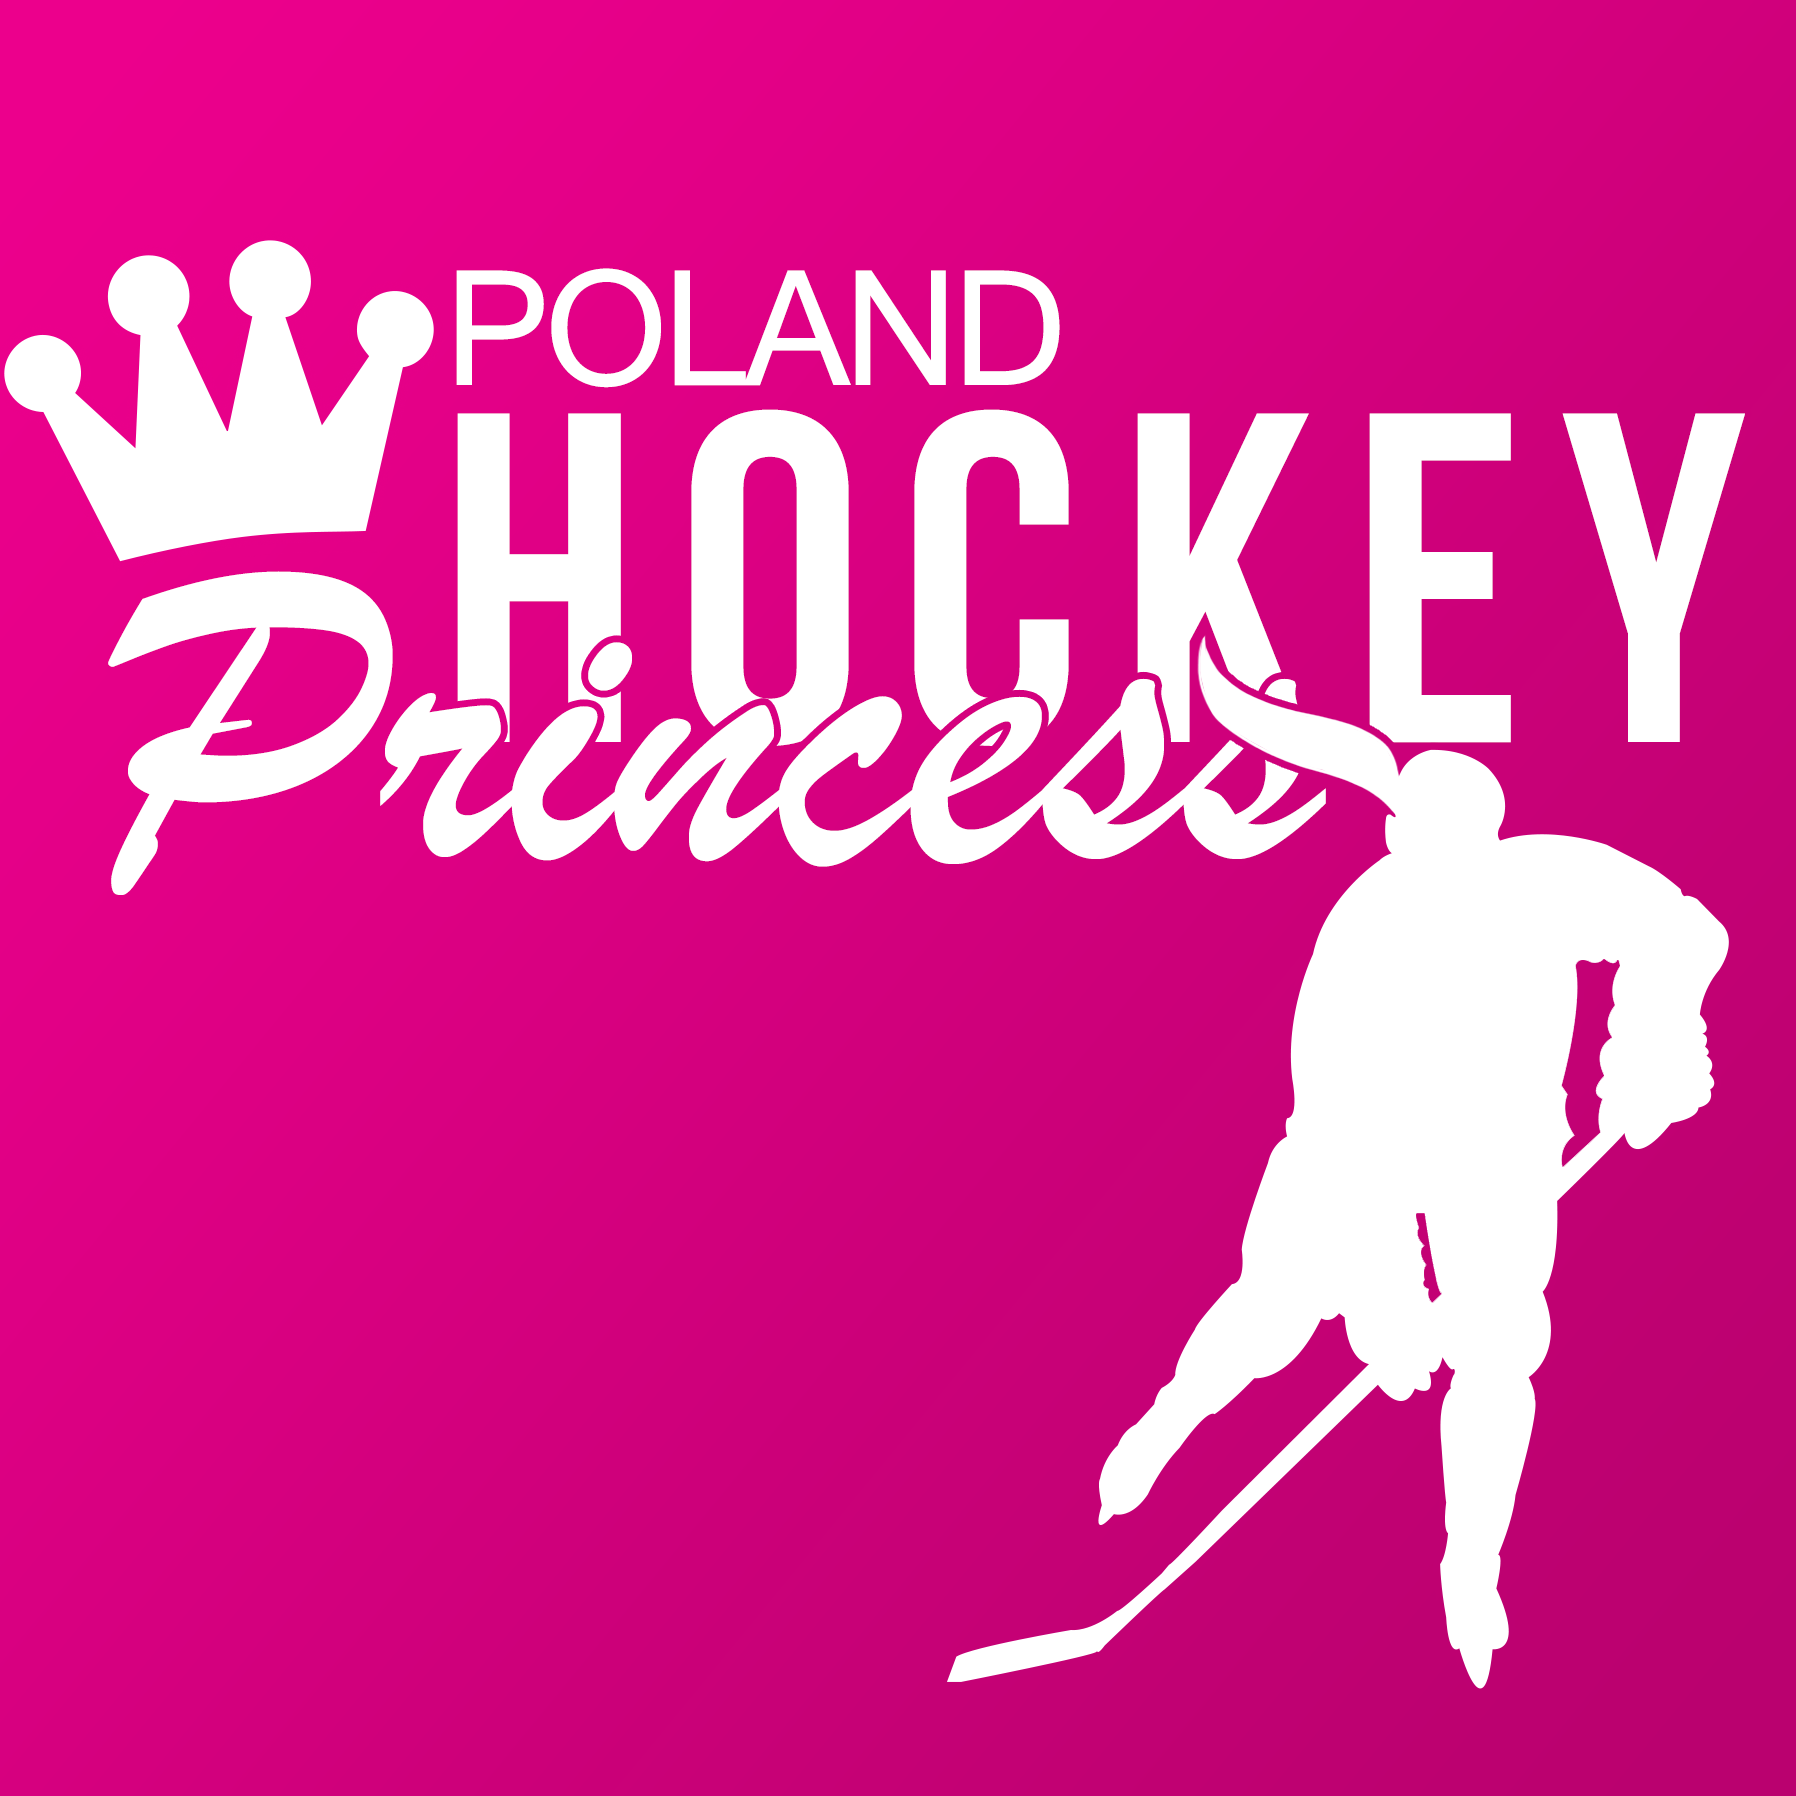 Hockey Princess Poland dołącza do grona przyjaciół portalu!